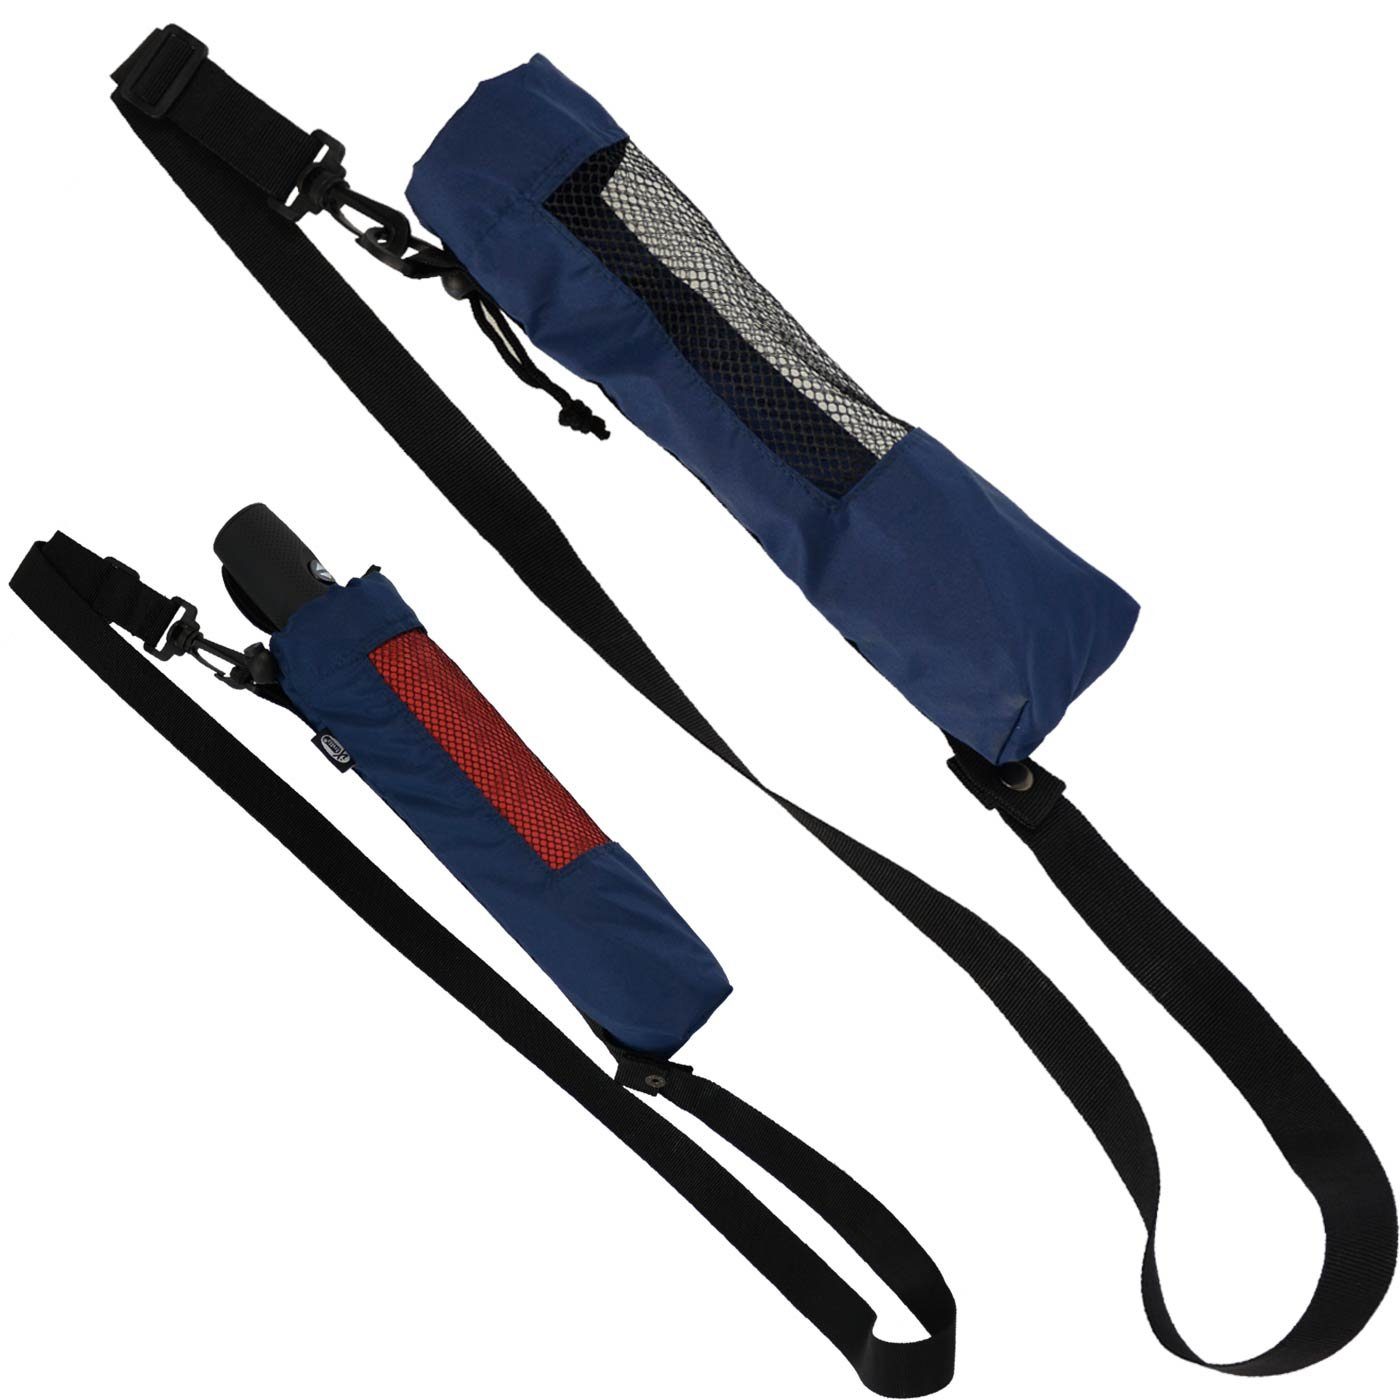 Taschenregenschirm Hülle innovativ Taschenschirme, zum Trekking blau für iX-brella navy Umhängen